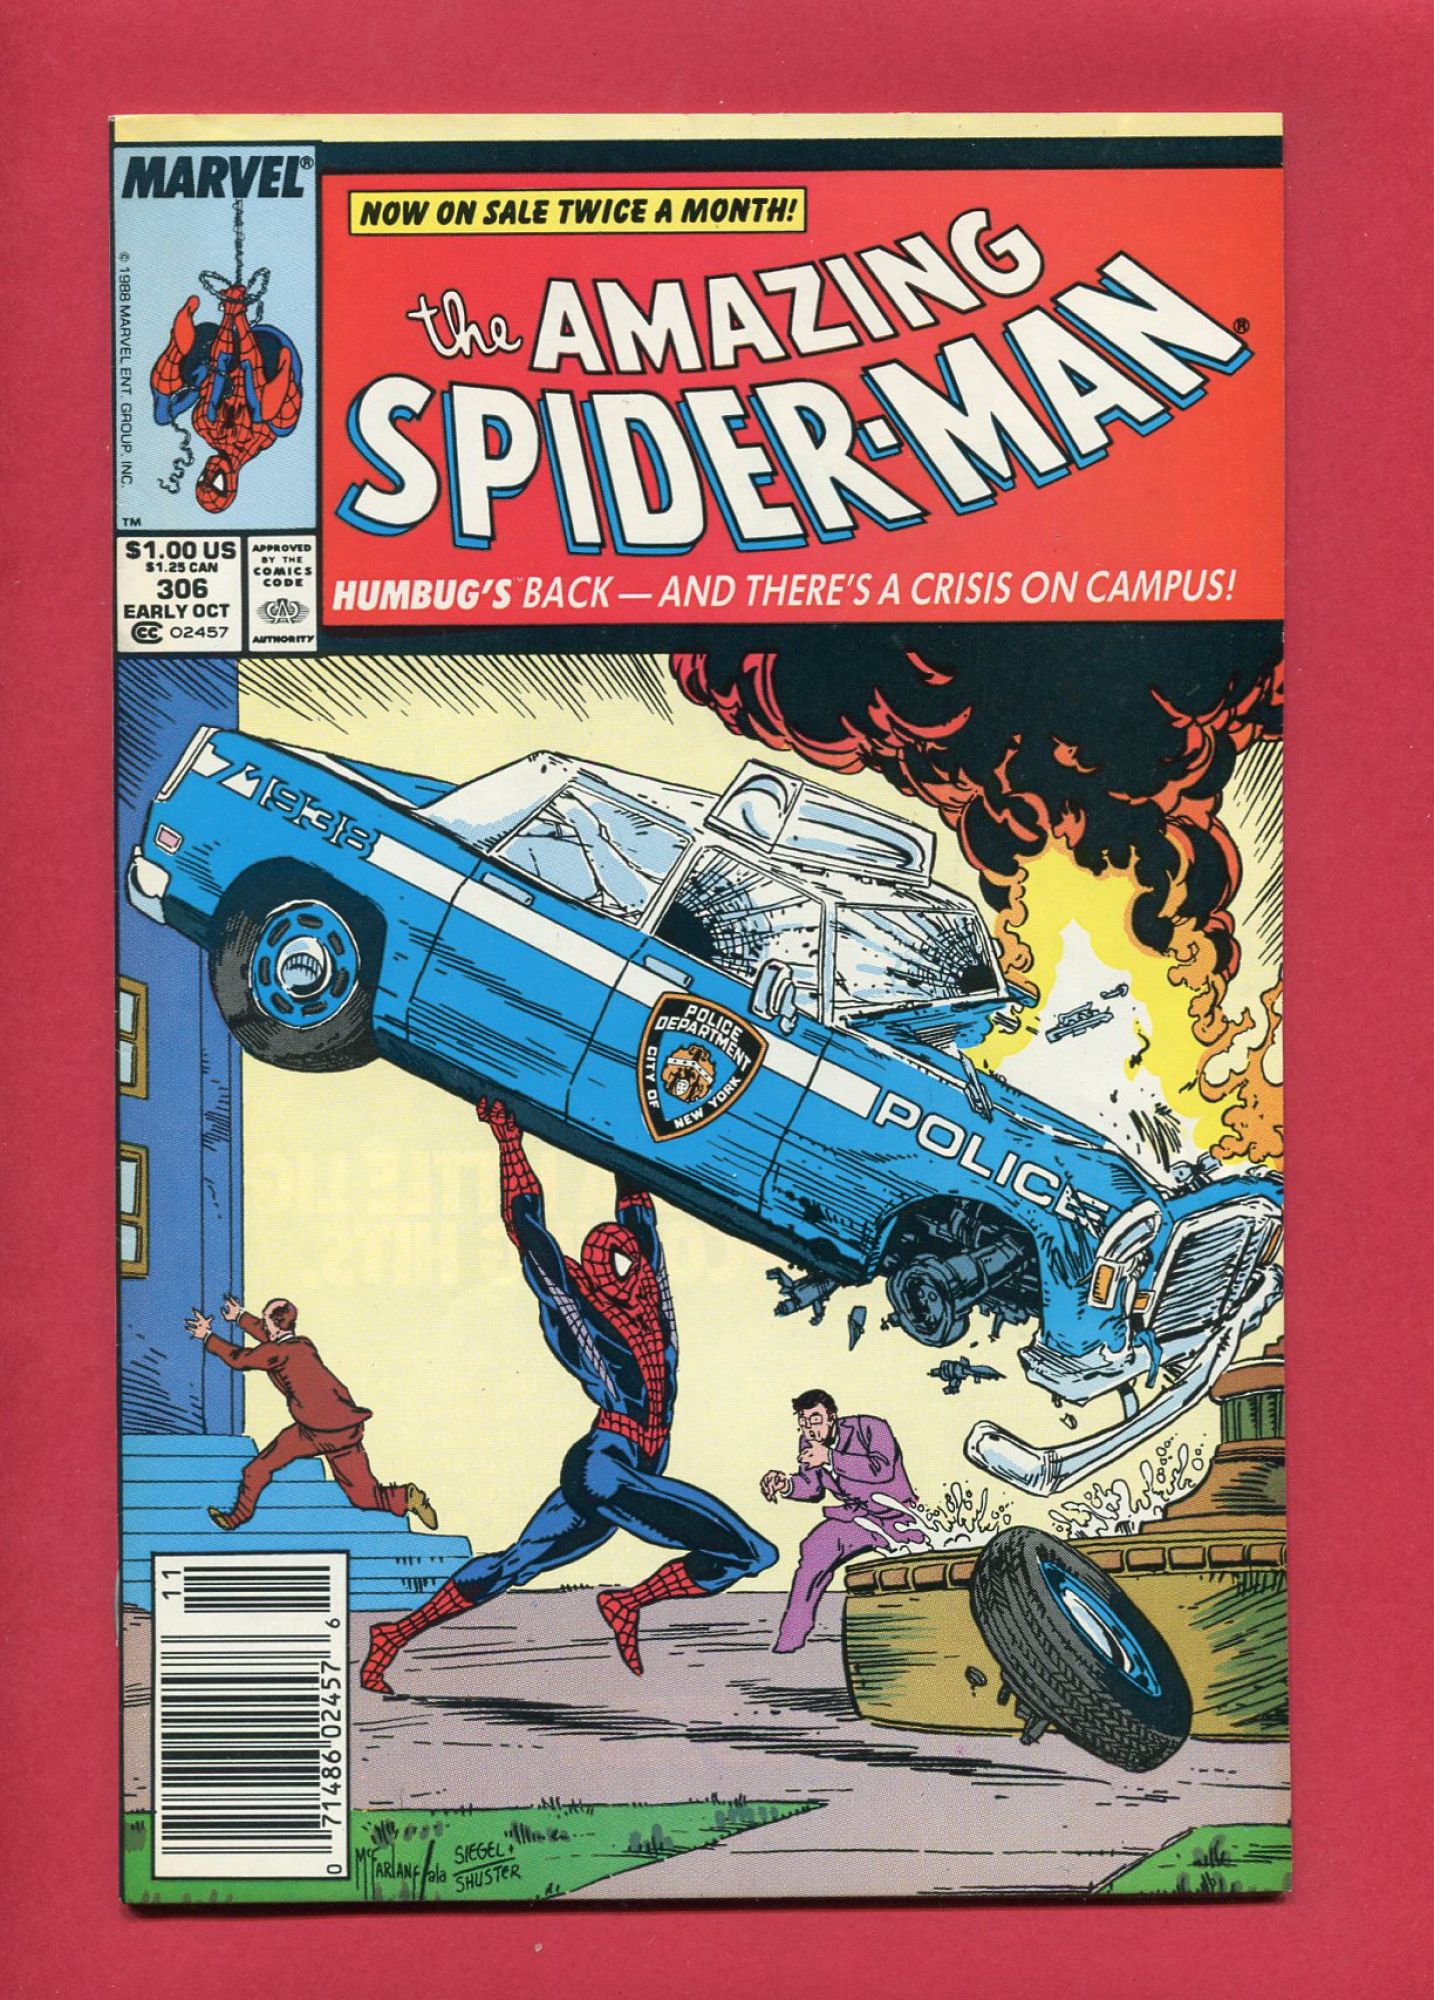 Amazing Spider-Man #306, Oct 1988, 8.5 VF+